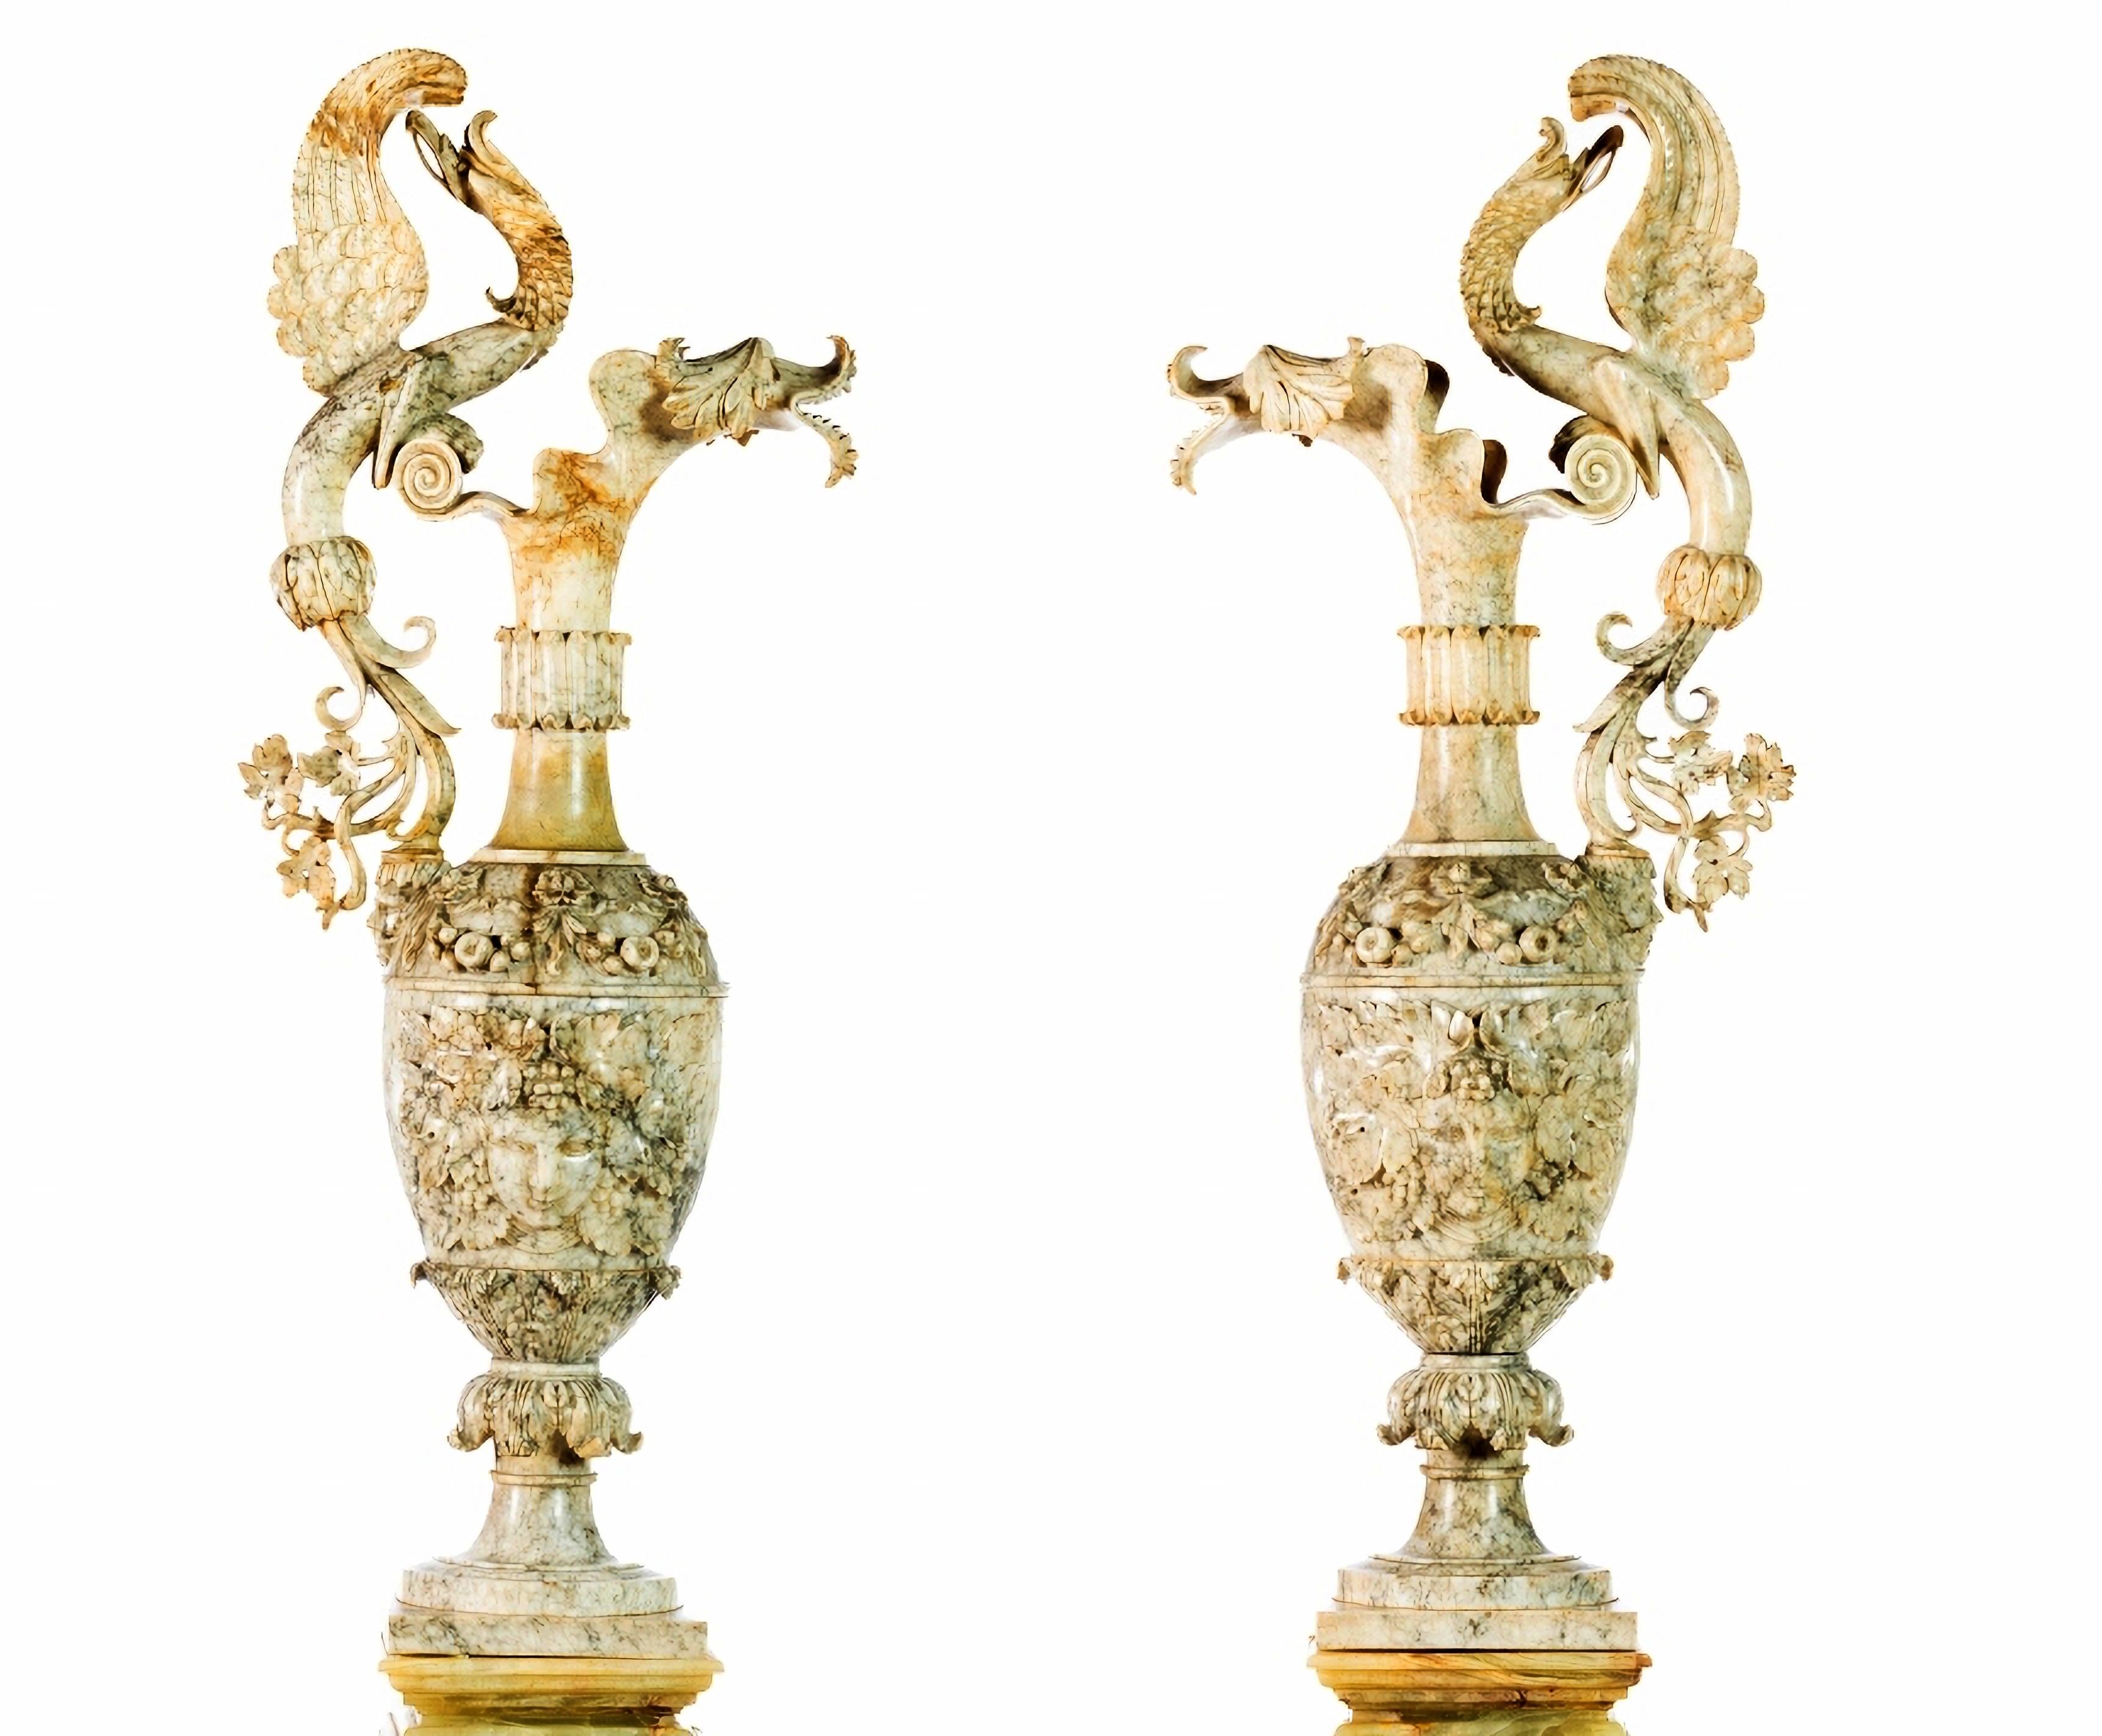 Magnifique paire d'amphores italiennes grandes du 19ème siècle

Italiens, à partir du 19ème siècle
en albâtre, avec un décor en relief représentant des motifs végétaux, des animaux fantastiques et des masques. 
Montés sur des socles en albâtre.